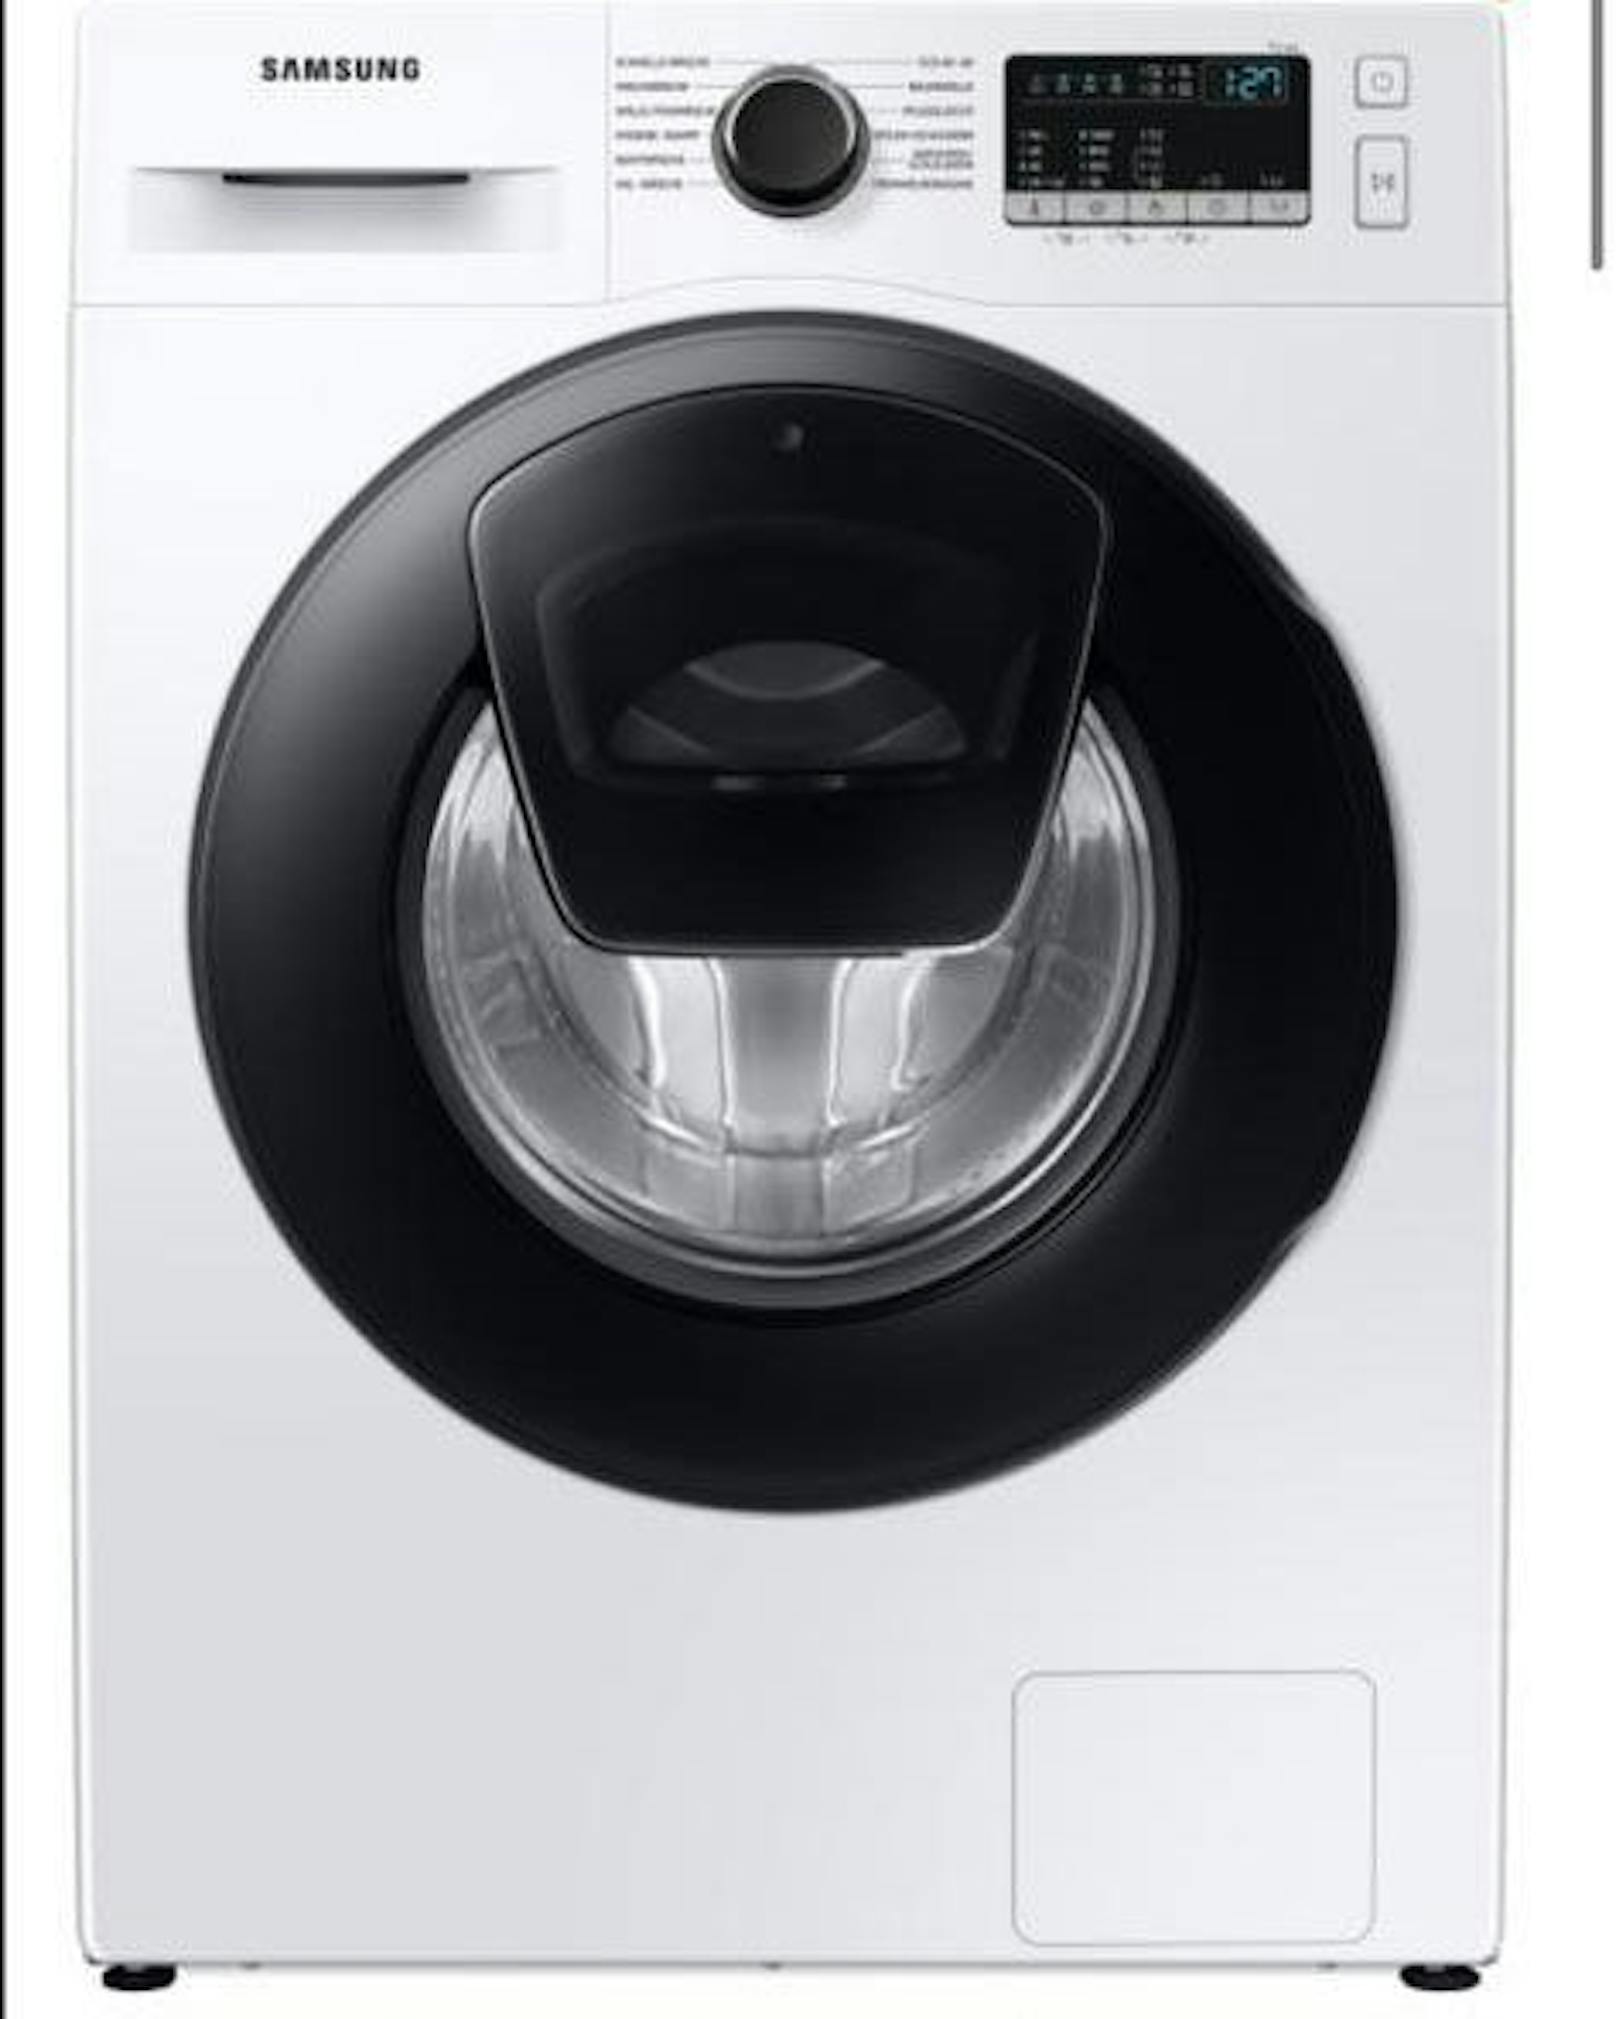 Die neue Waschmaschine der Marke Samsung kommt schon am Dienstag